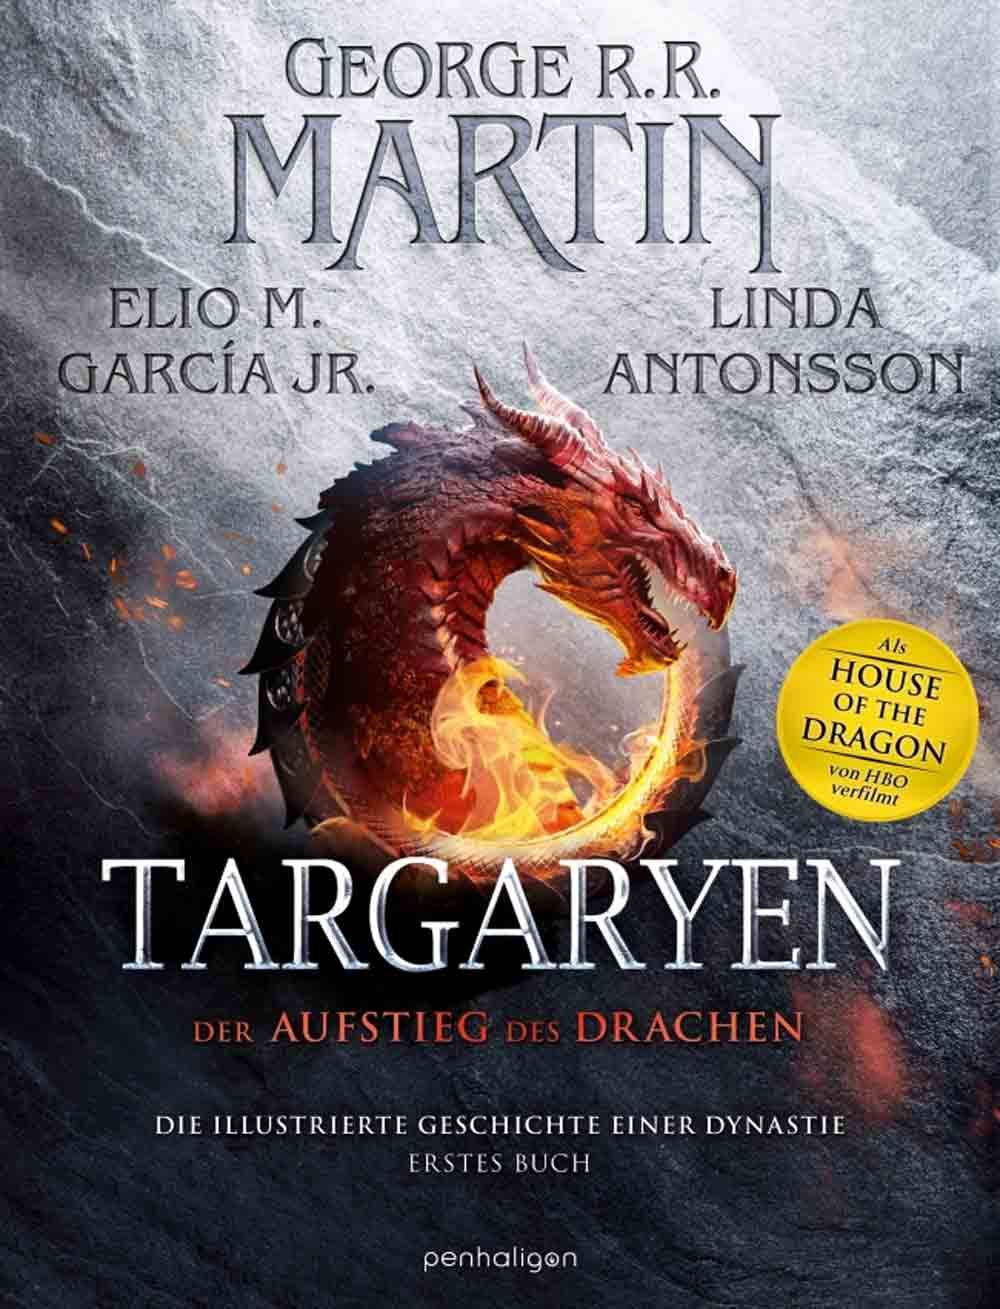 Lesetipps für Gütersloh, George R. R. Martin, Targaryen, der Aufstieg des Drachens